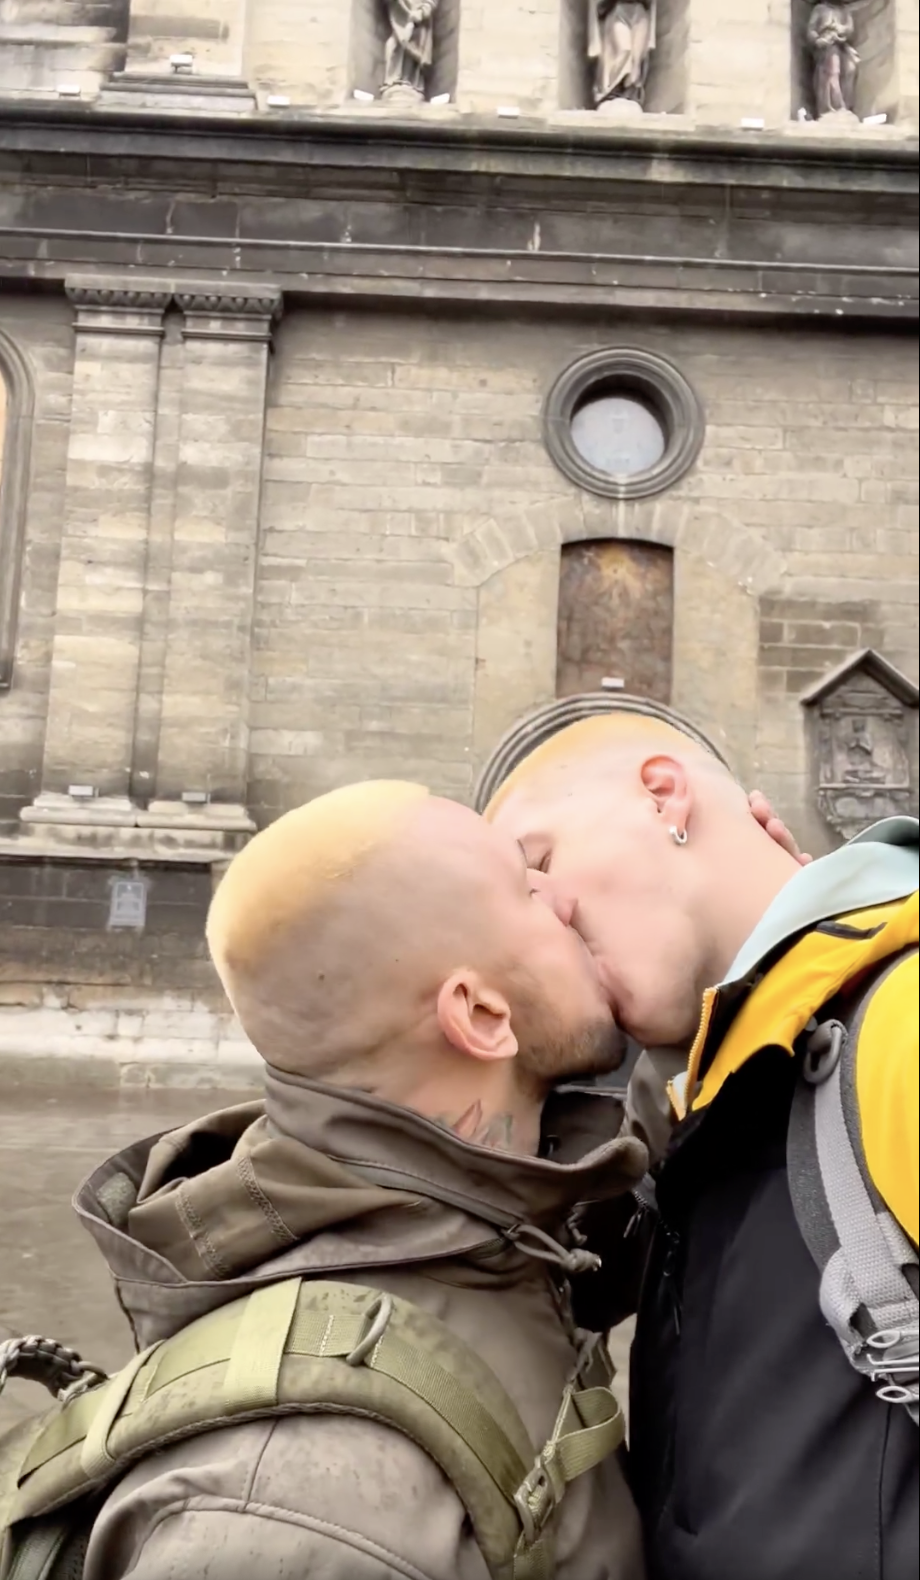 Две девушки поцеловались в церкви Львова после скандала вокруг клипа Жадана и Соловий: их поддержал ЛГБТ-военный